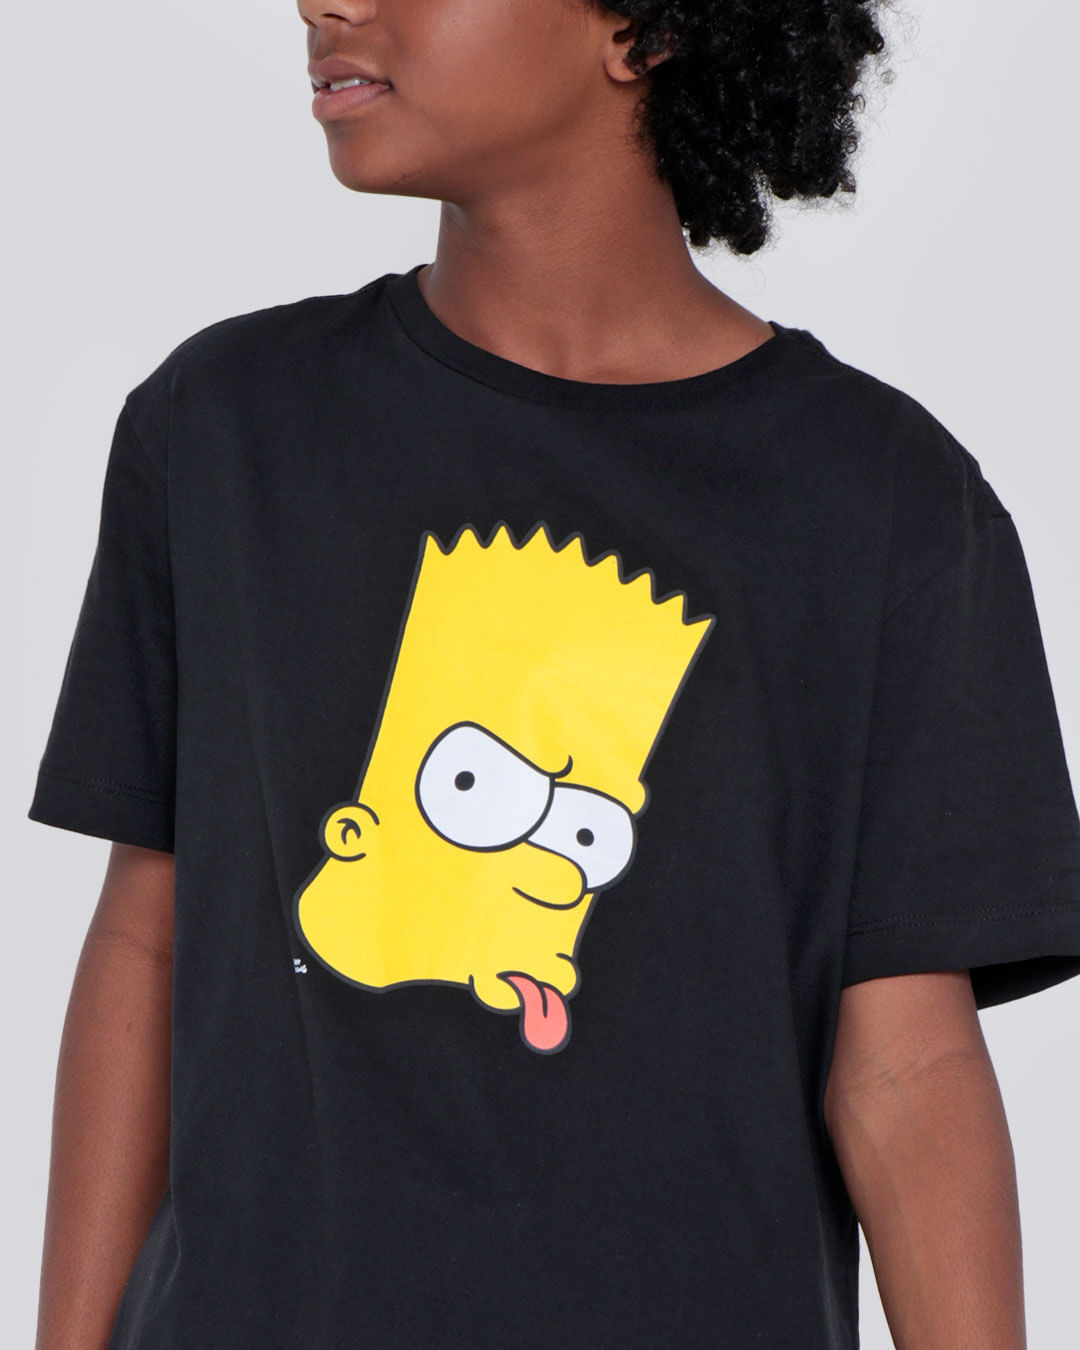 Camiseta-juvenil-Simpsons-Preta